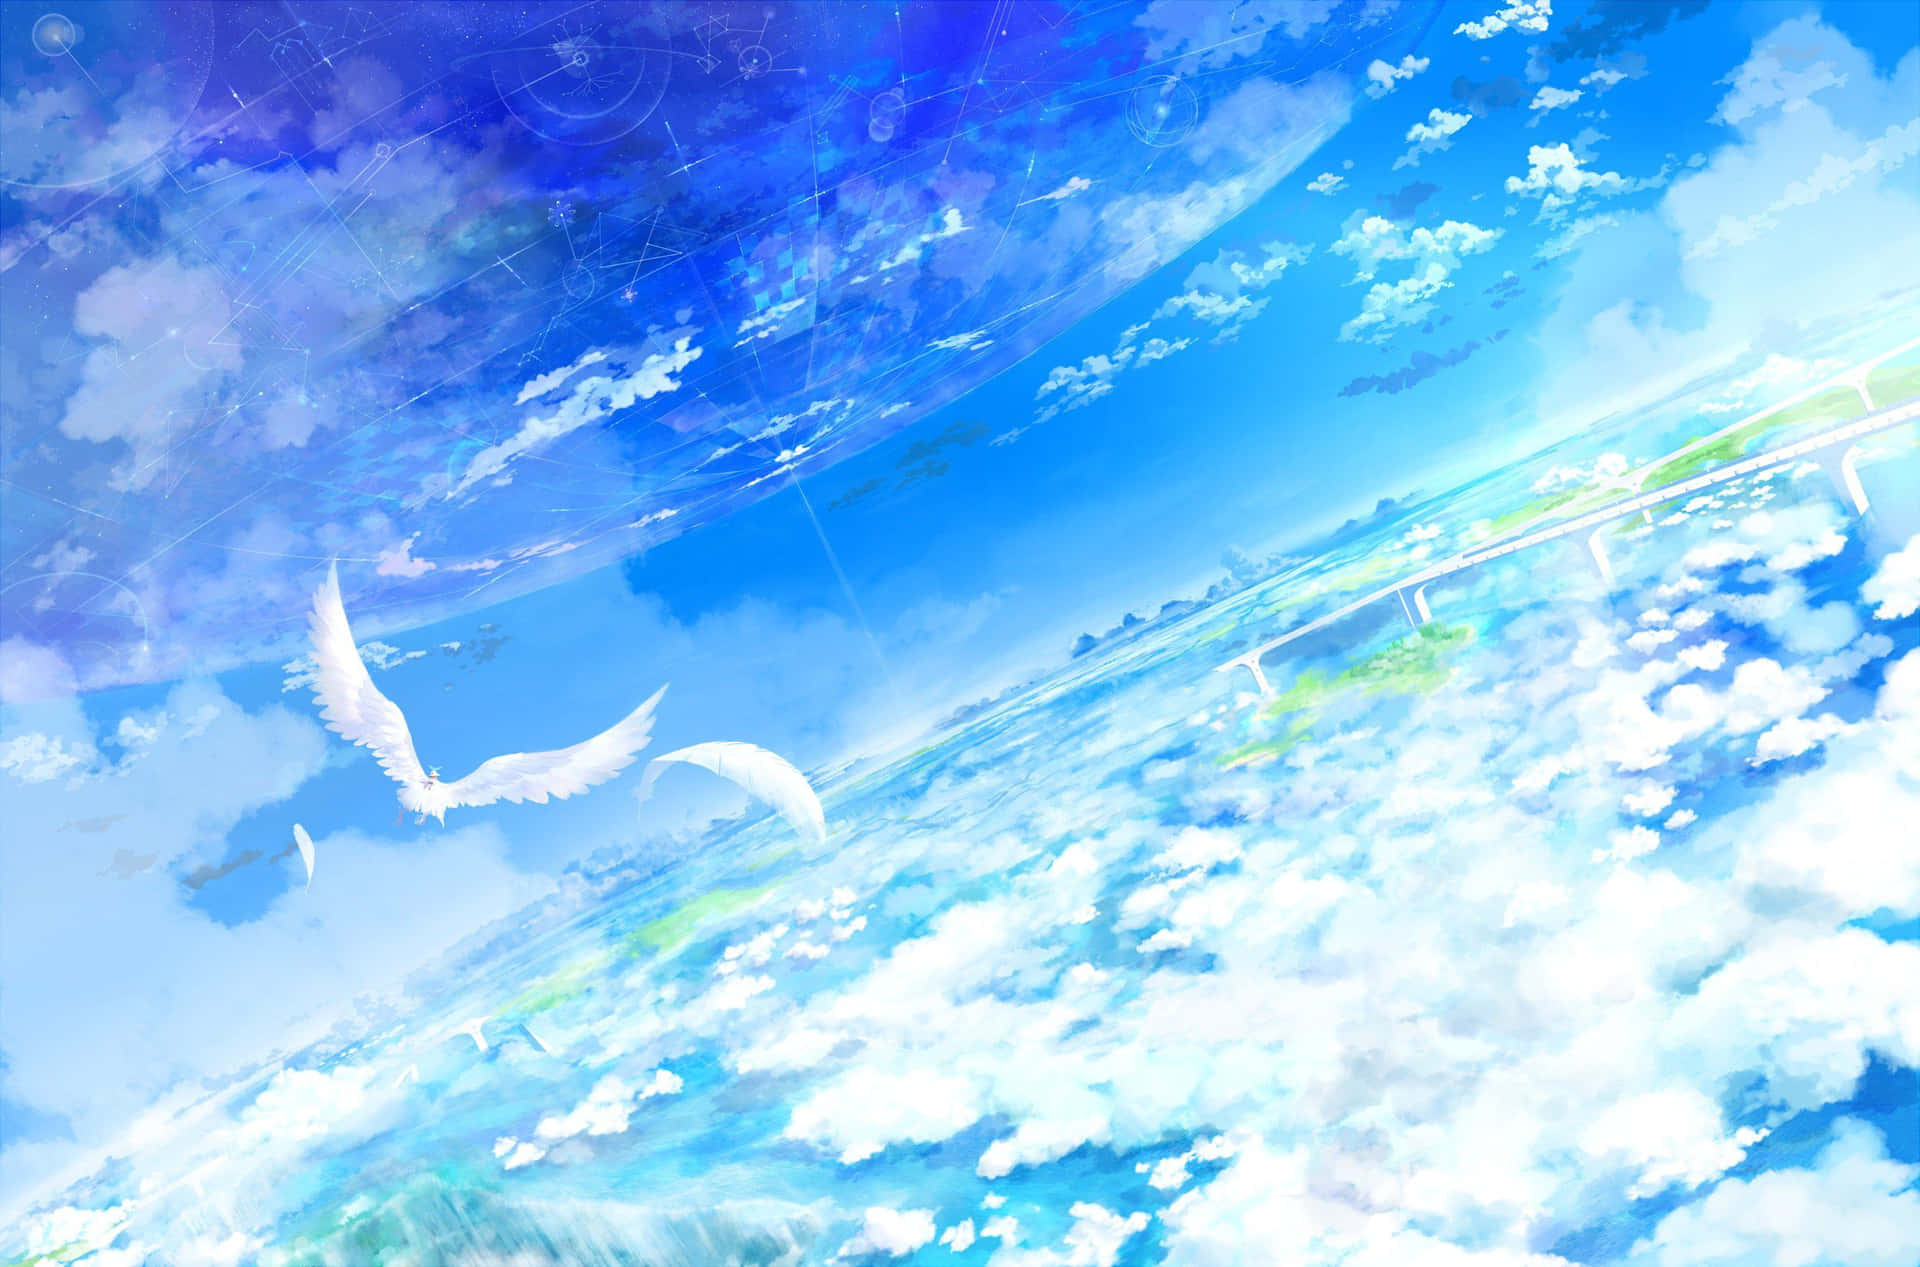 Tittandes På Den Vackra Anime-himlen, Laddade Jag Ner Den Som Min Nya Bakgrundsbild. Wallpaper